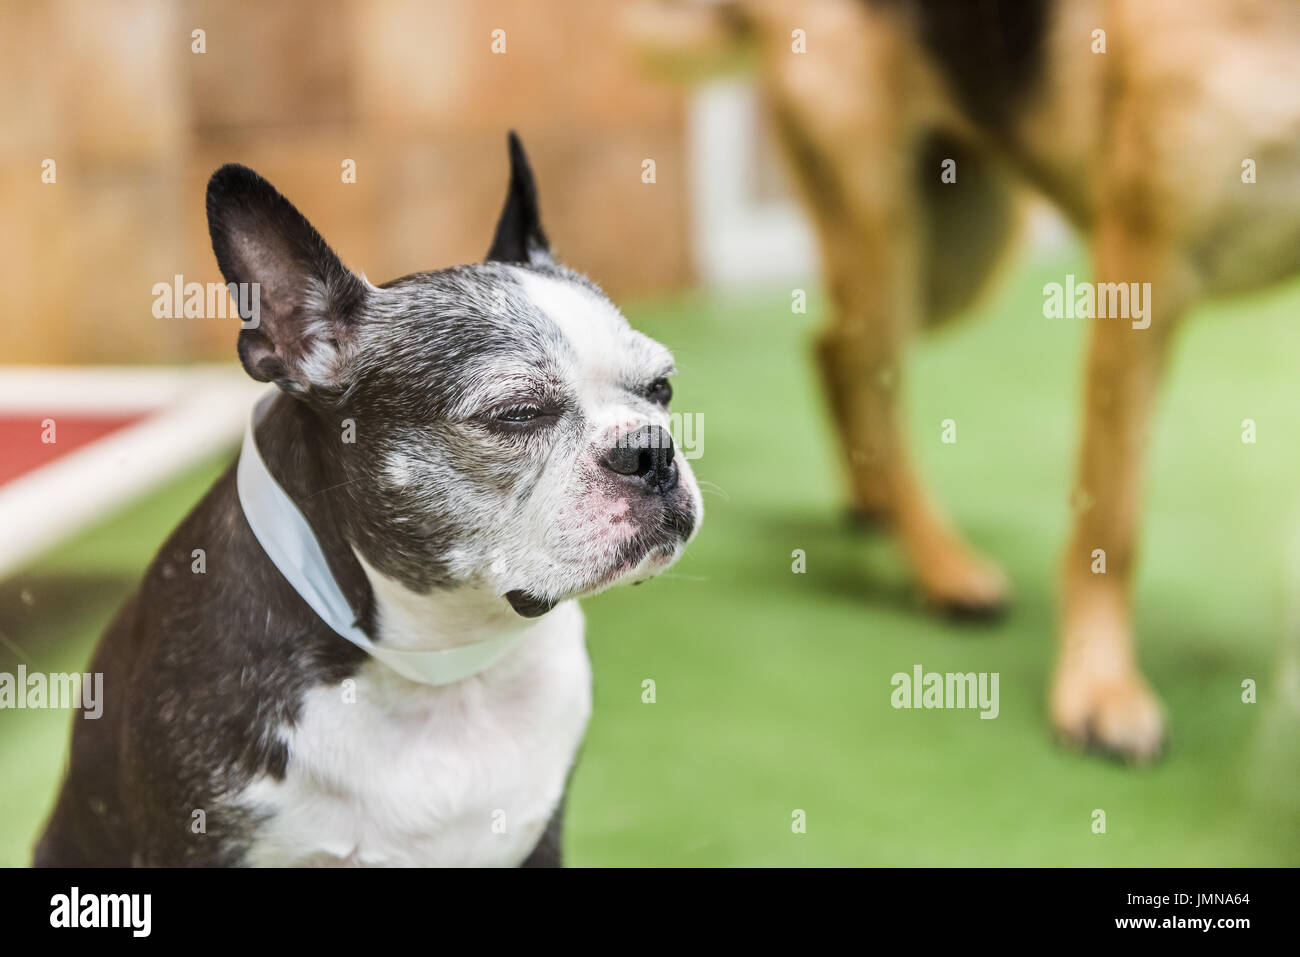 Nahaufnahme von Boston Terrier Hund schielen die Augen in  Schulungseinrichtung Stockfotografie - Alamy